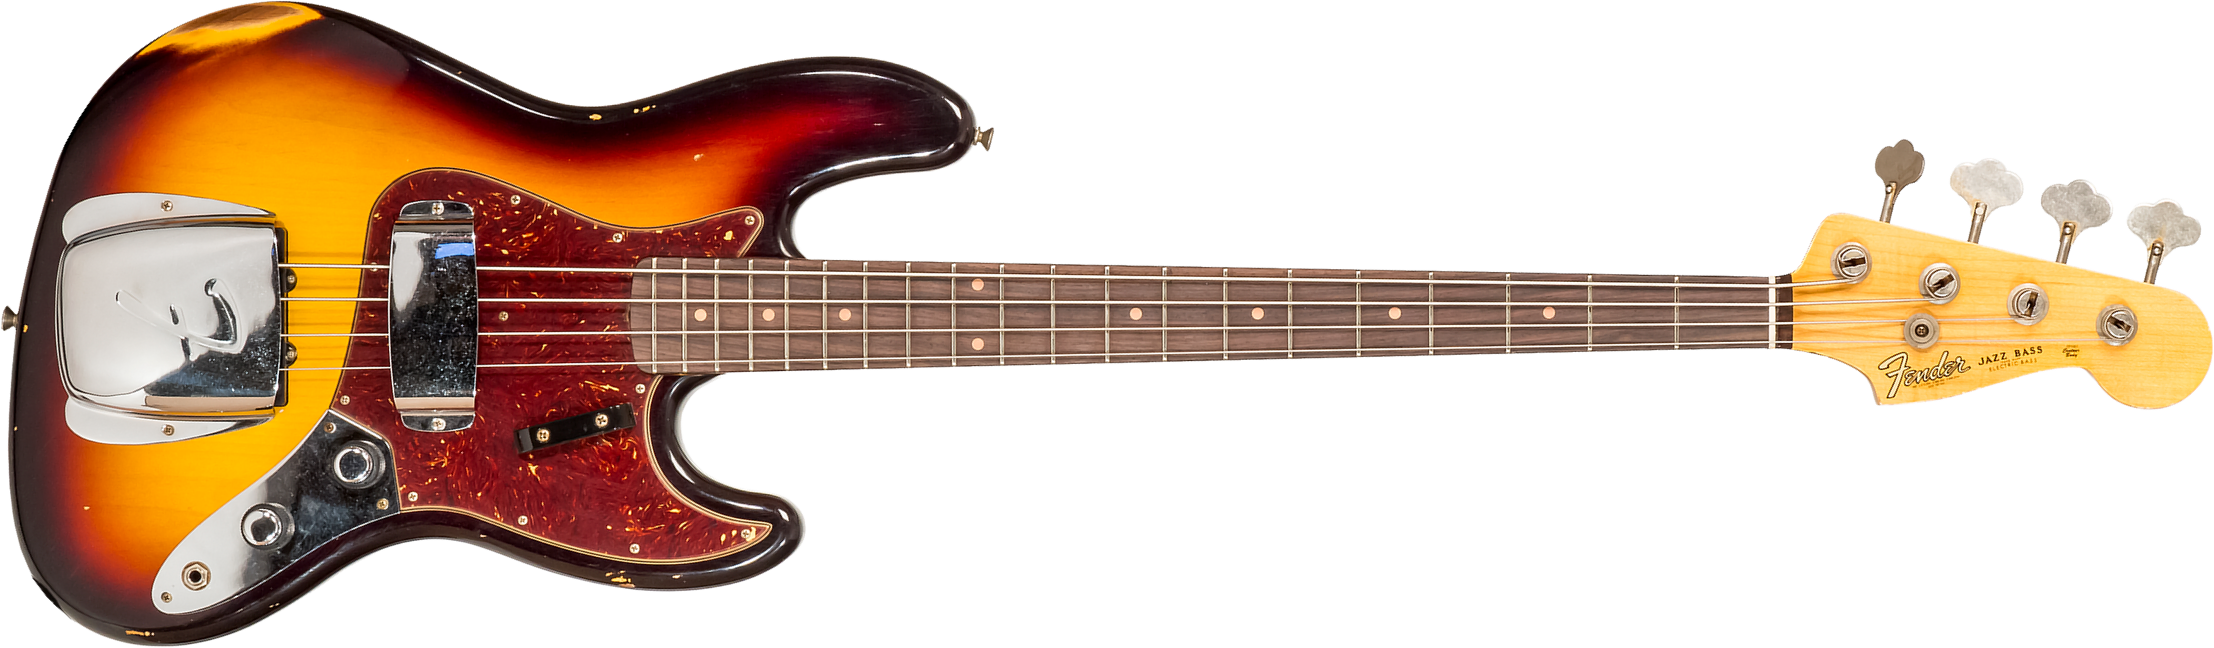 Fender Custom Shop  Jazz Bass 1962 Rw #cz569015 - Relic 3-color Sunburst - Basse Électrique Solid Body - Main picture